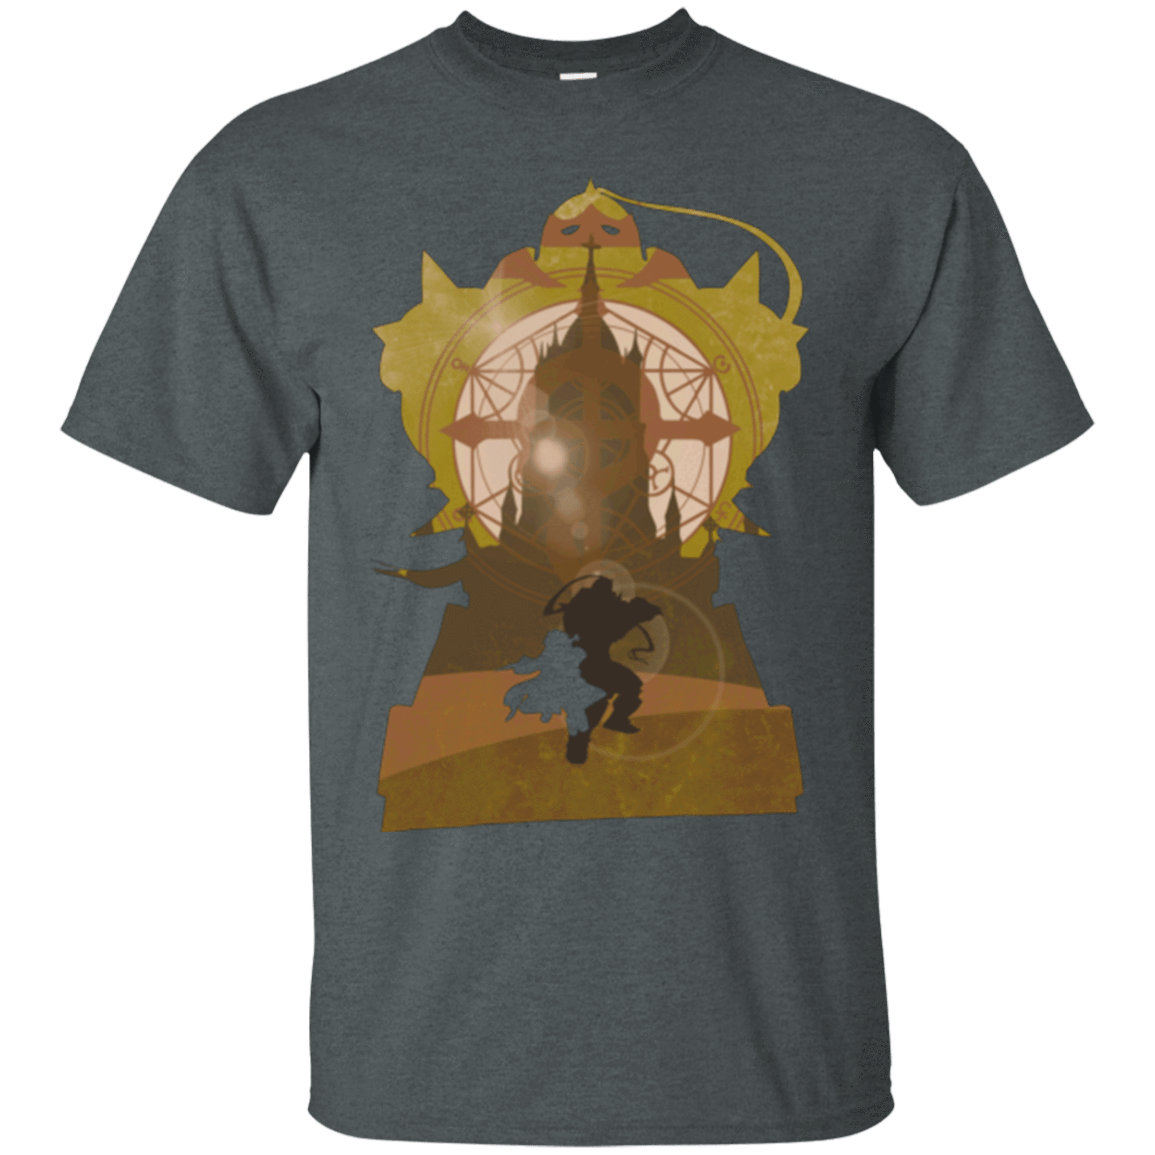 T-Shirts Dark Heather / Small Alchemy Fate T-Shirt